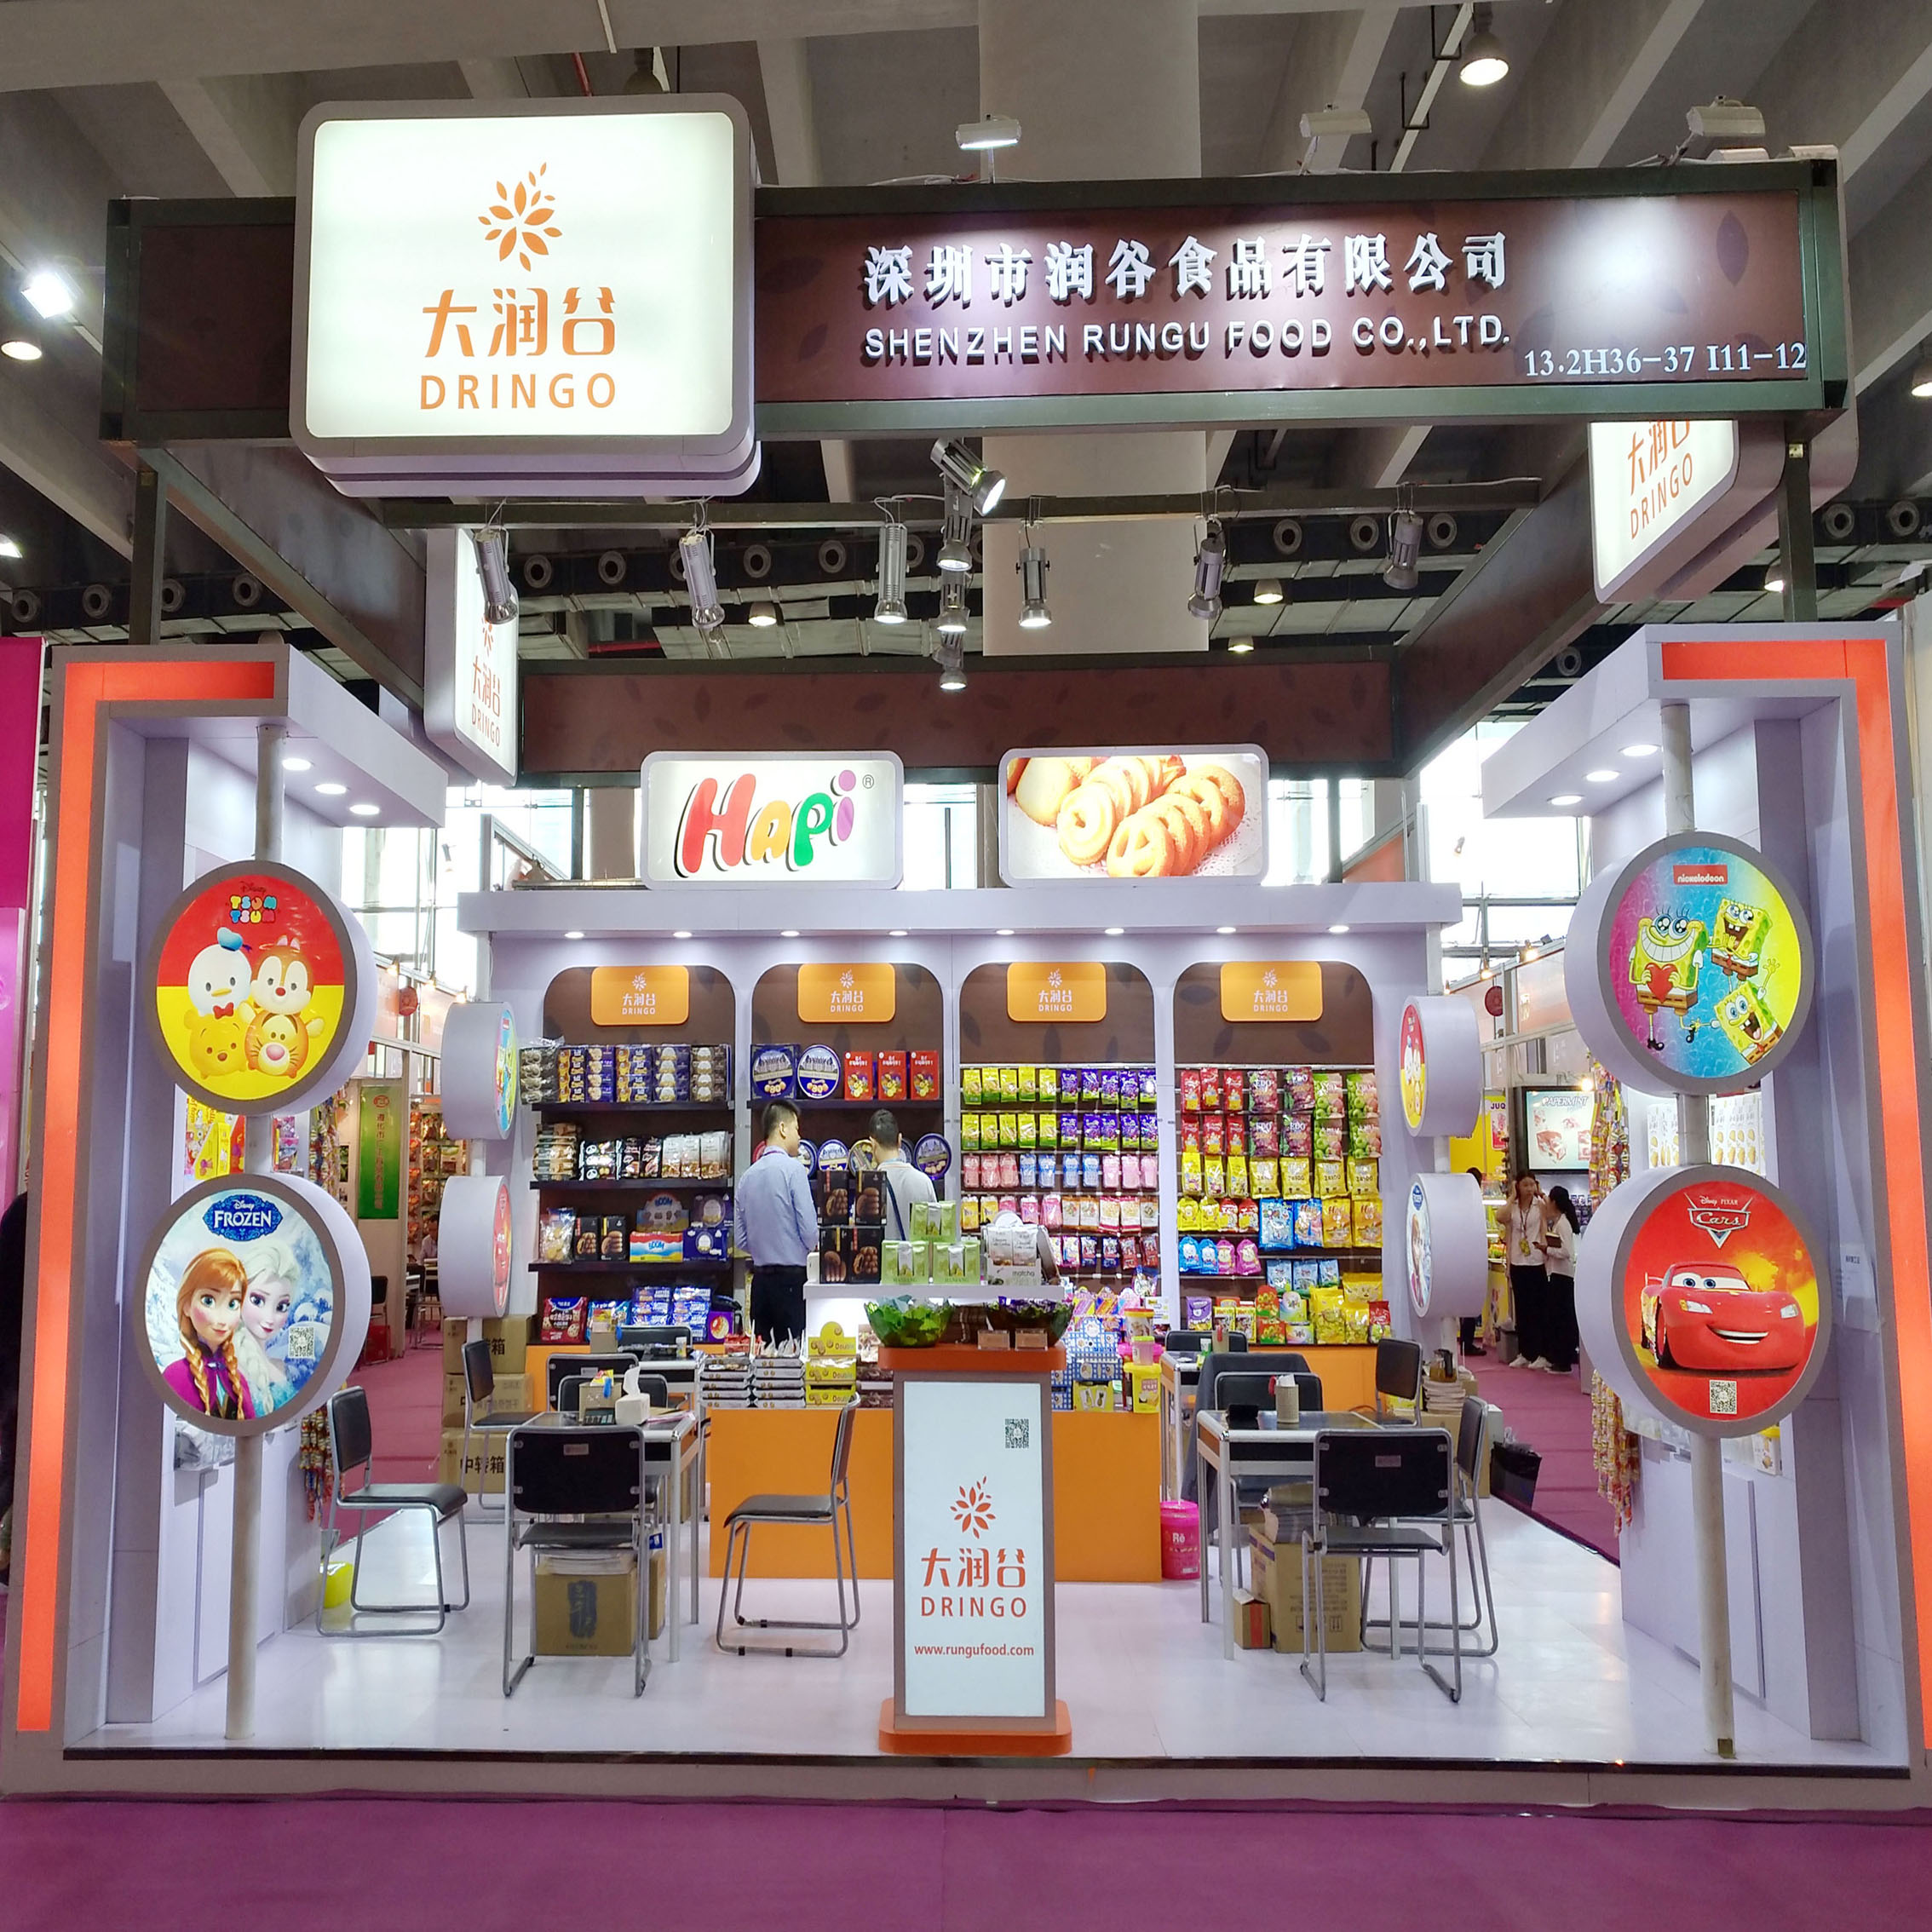 Shenzhen Rungu Food Co., Ltd attended 124th Canton Fair